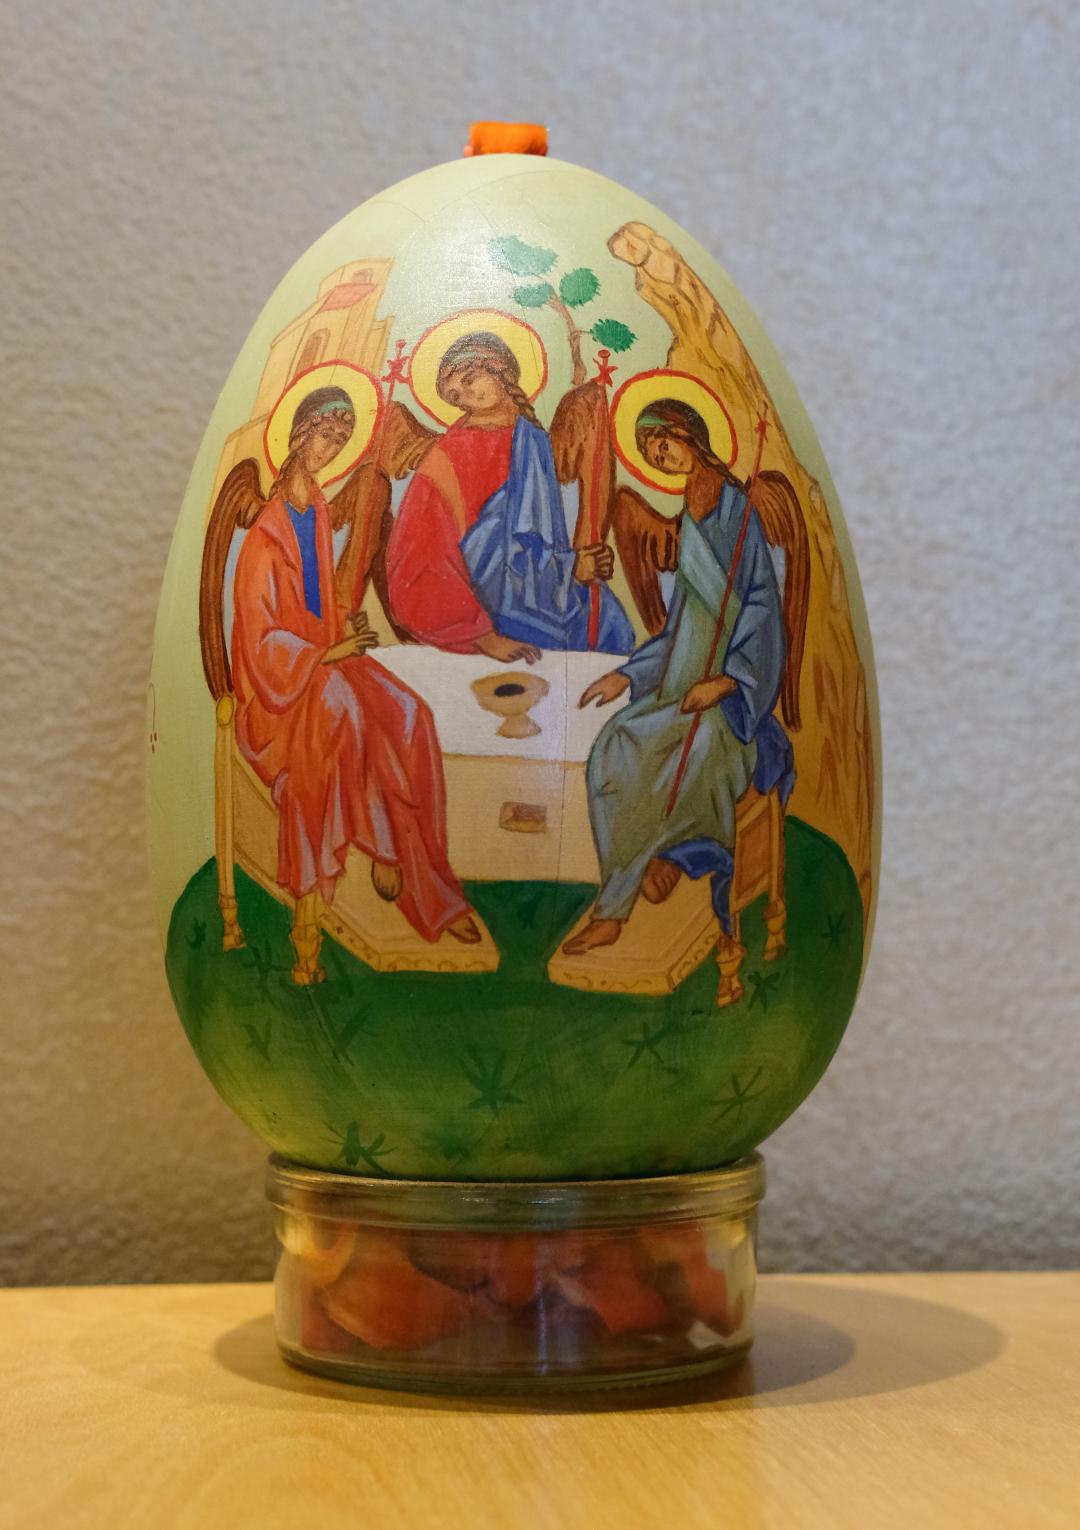 Pyhä Kolminaisuus kuvattuna värikkääseen pääsiäismunaan